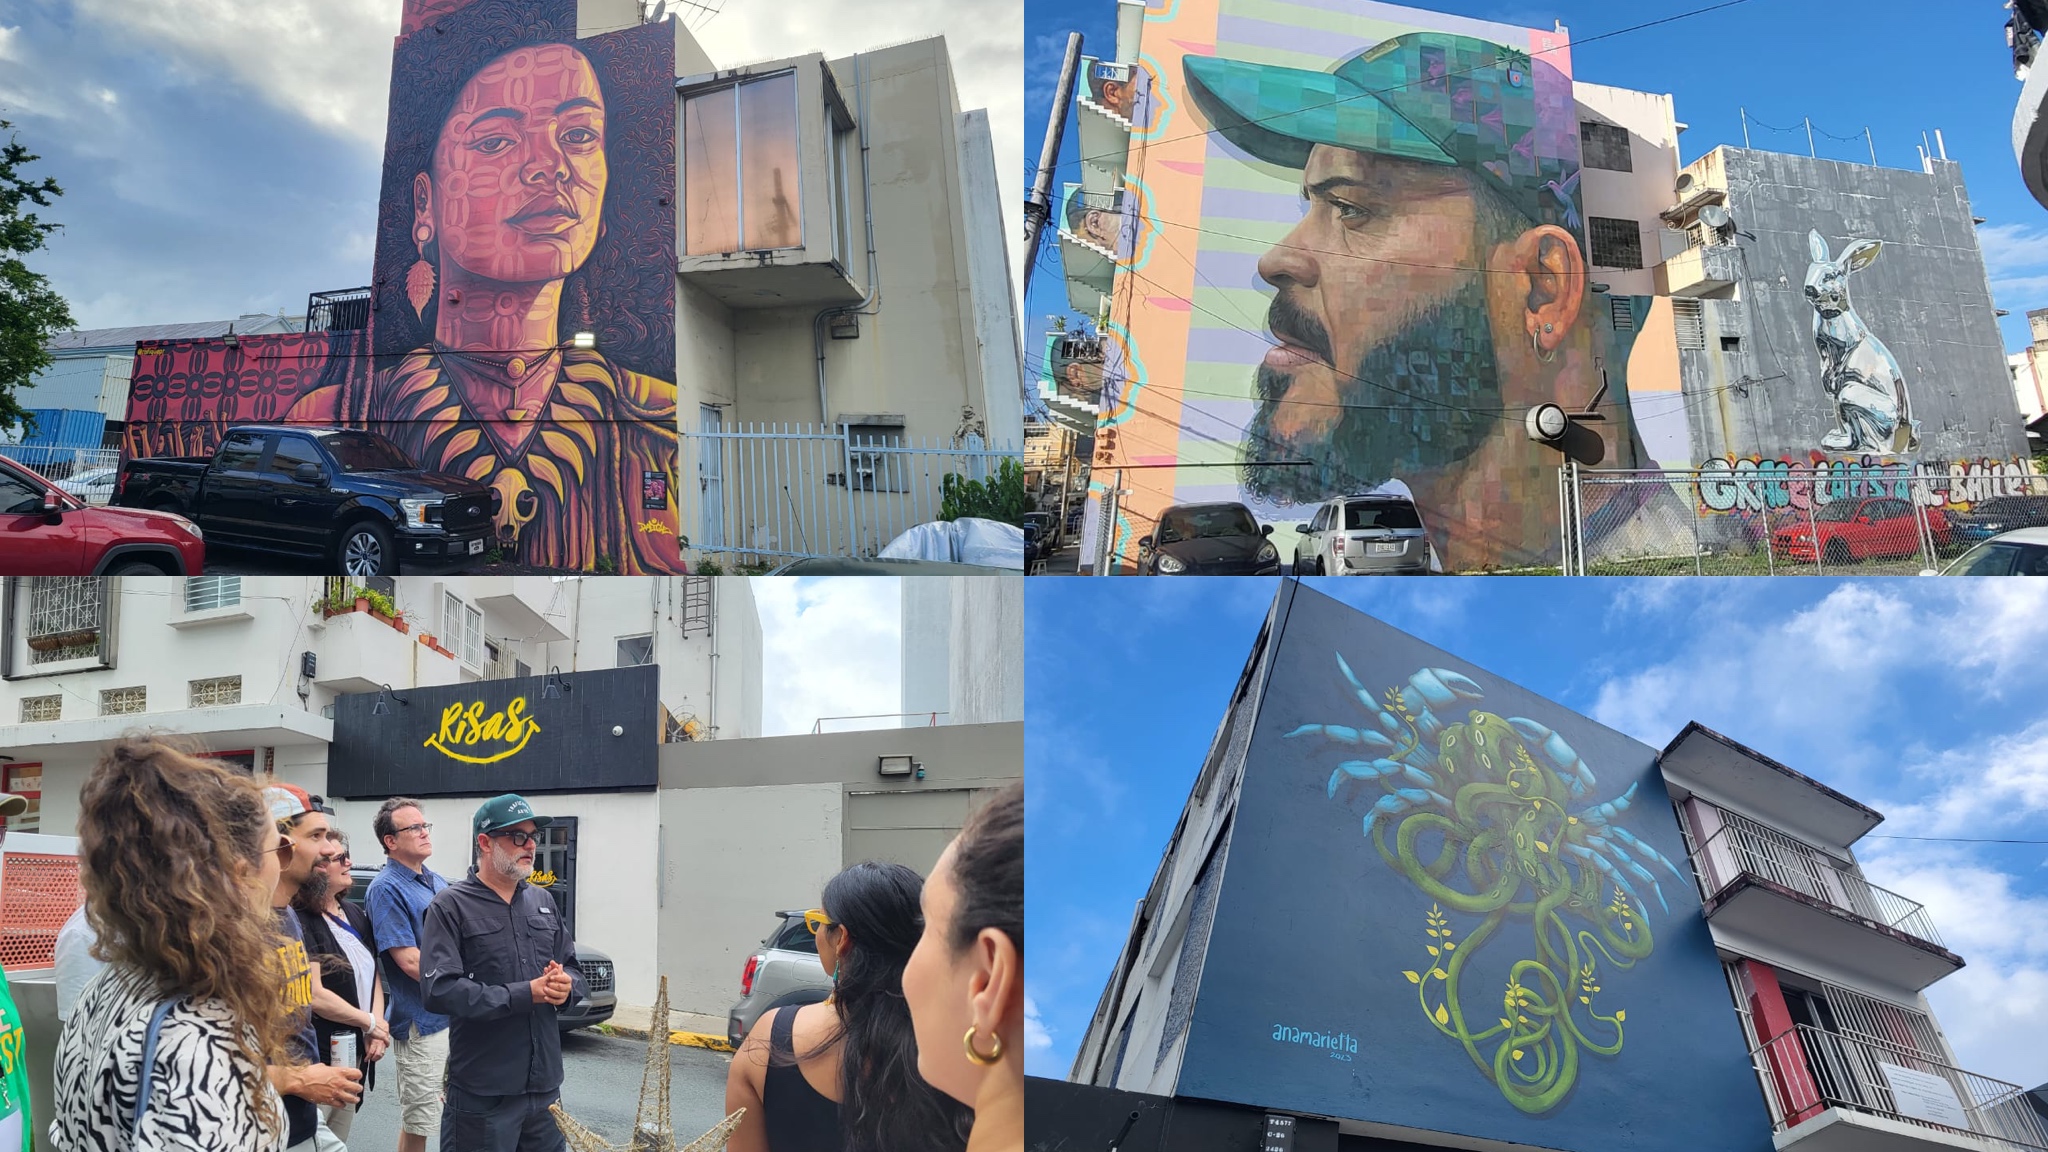     Porto-Rico : à Santurce, l'art, héritage de l'esclavage, irradie les murs

